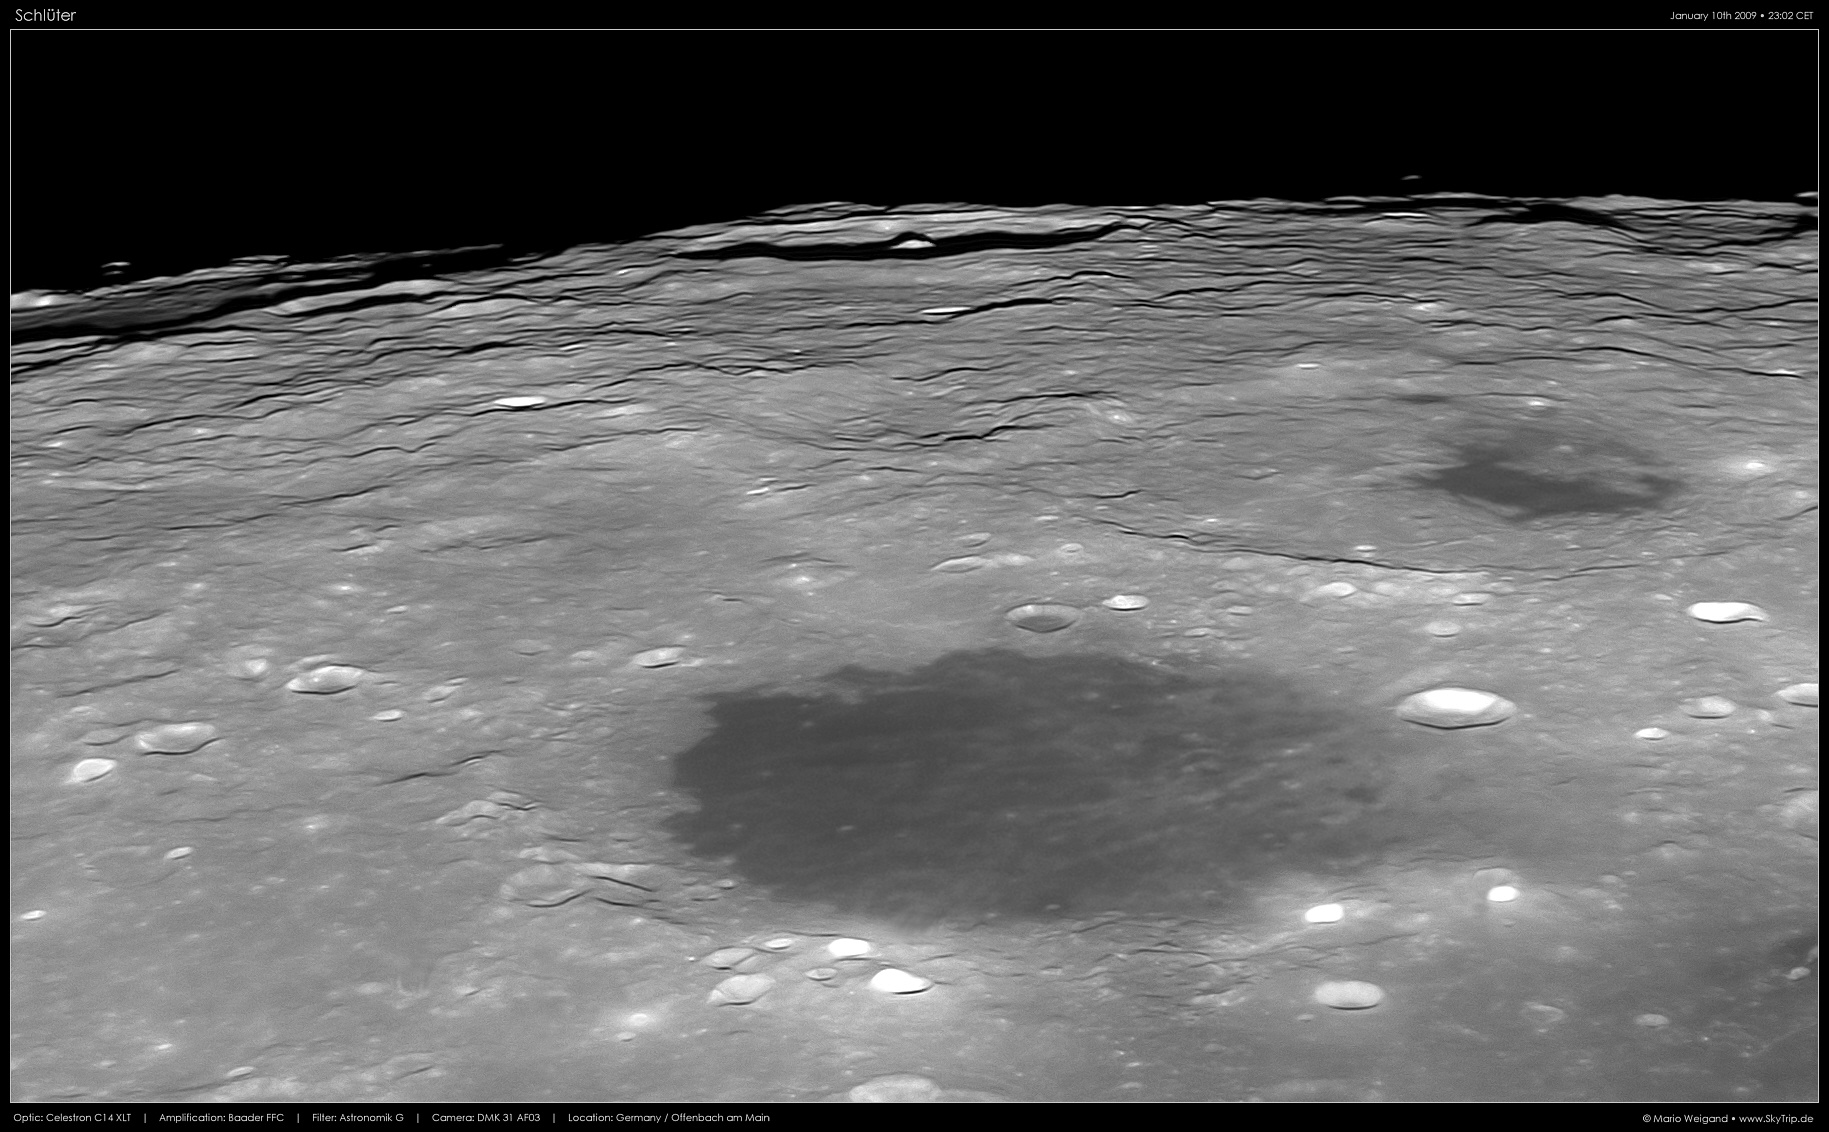 Mondfoto: Krater Schlter